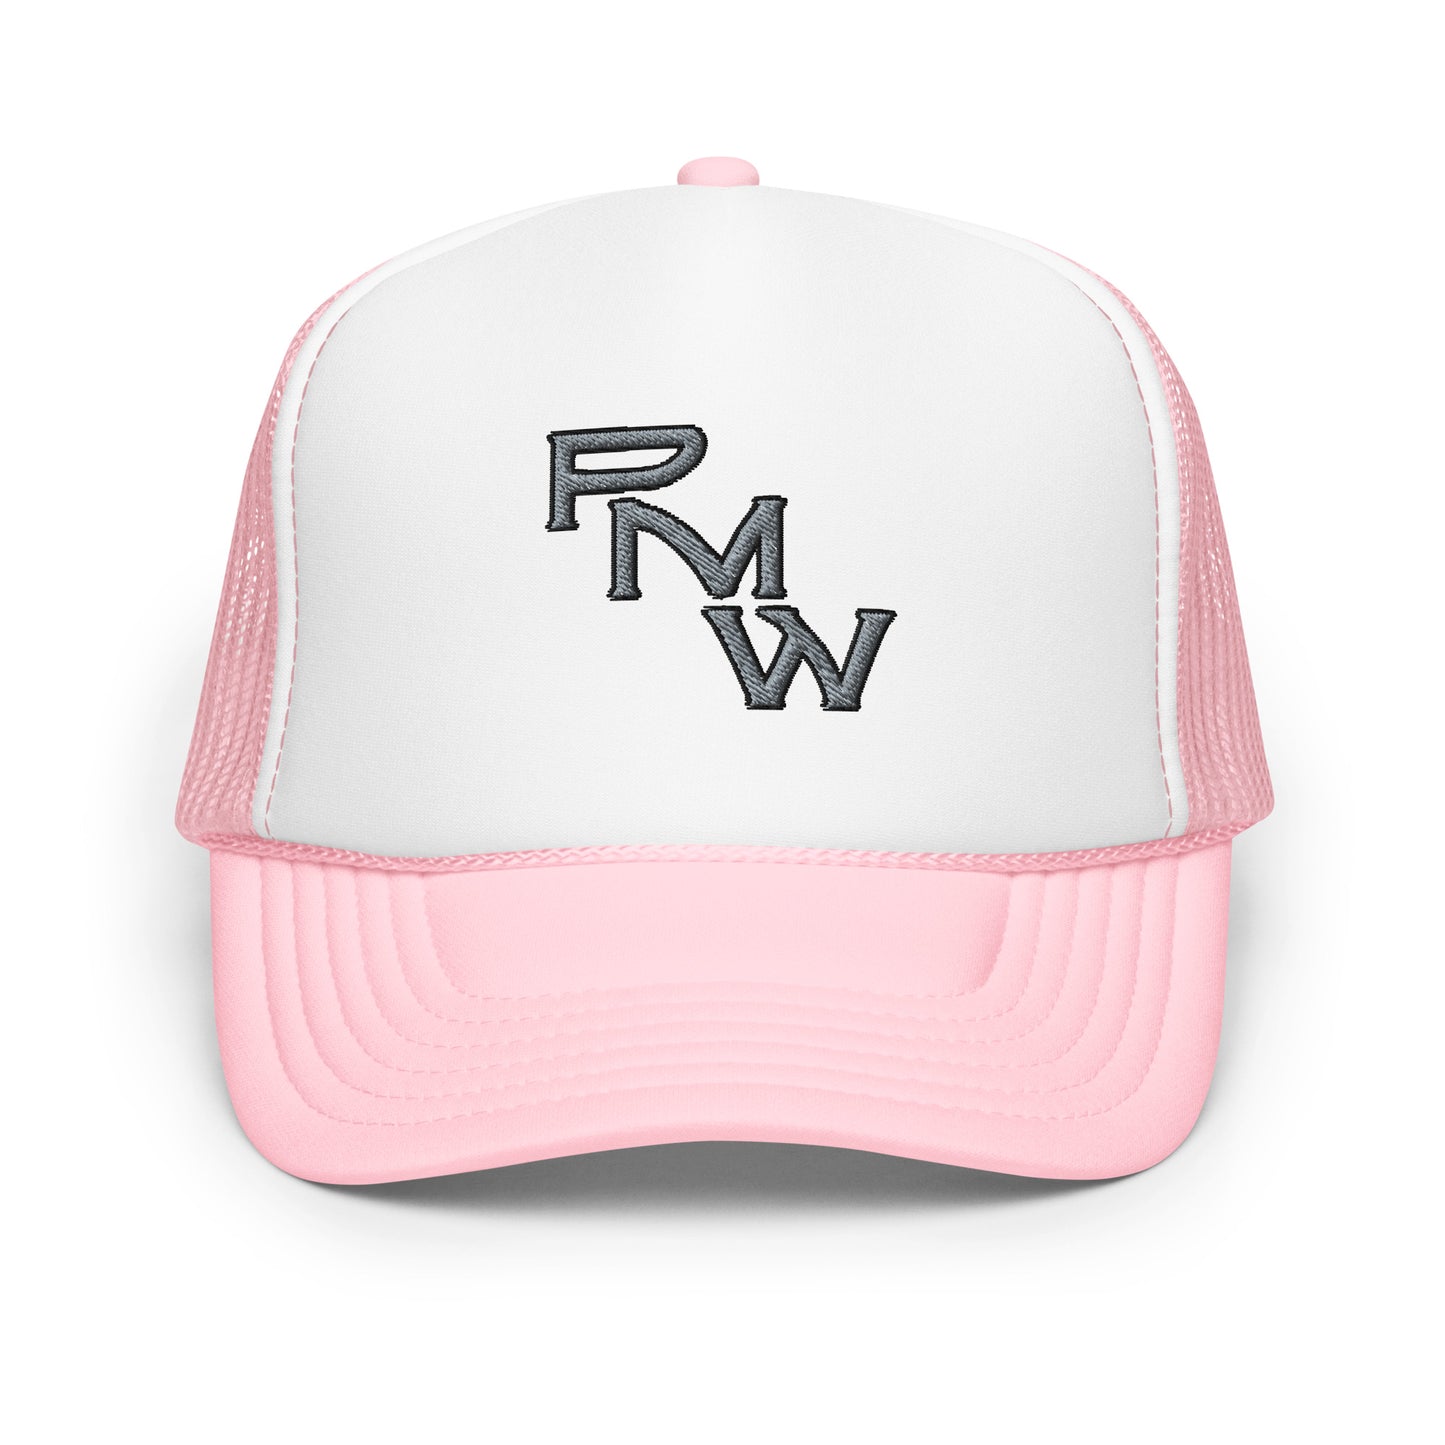 Pender Metal Works (RMW) Foam trucker hat